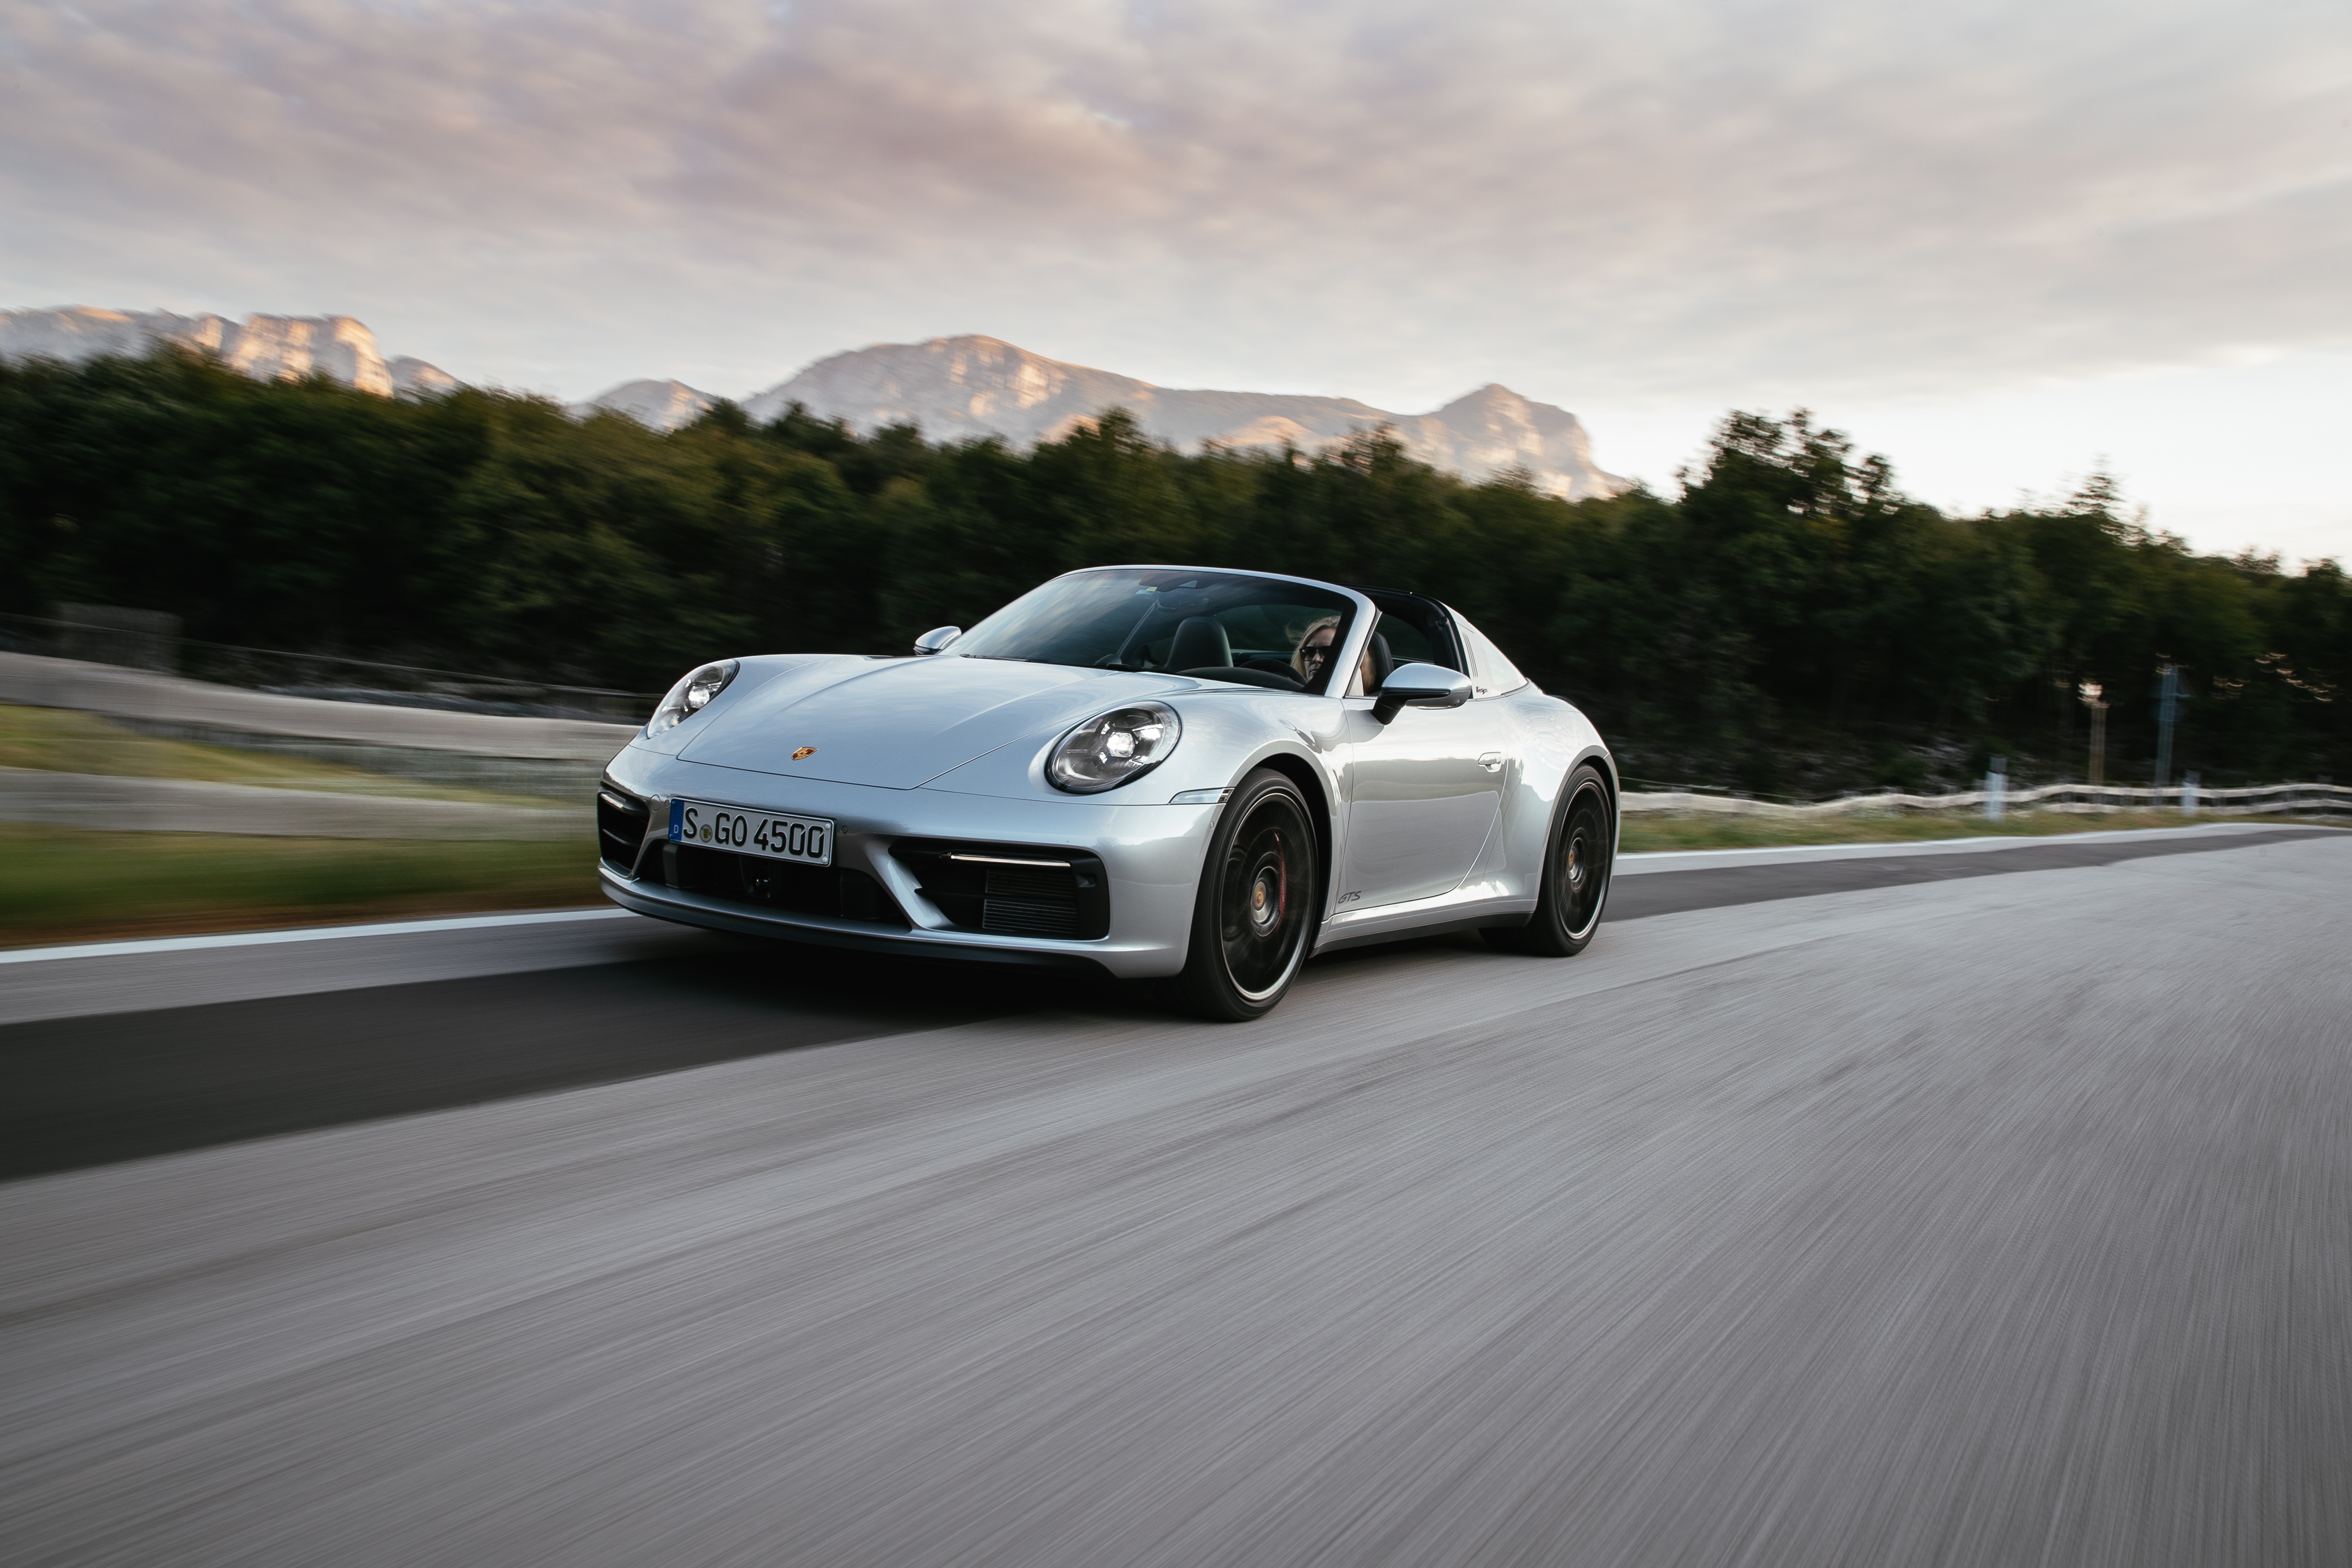 40+] Porsche 911 4k Wallpapers - WallpaperSafari